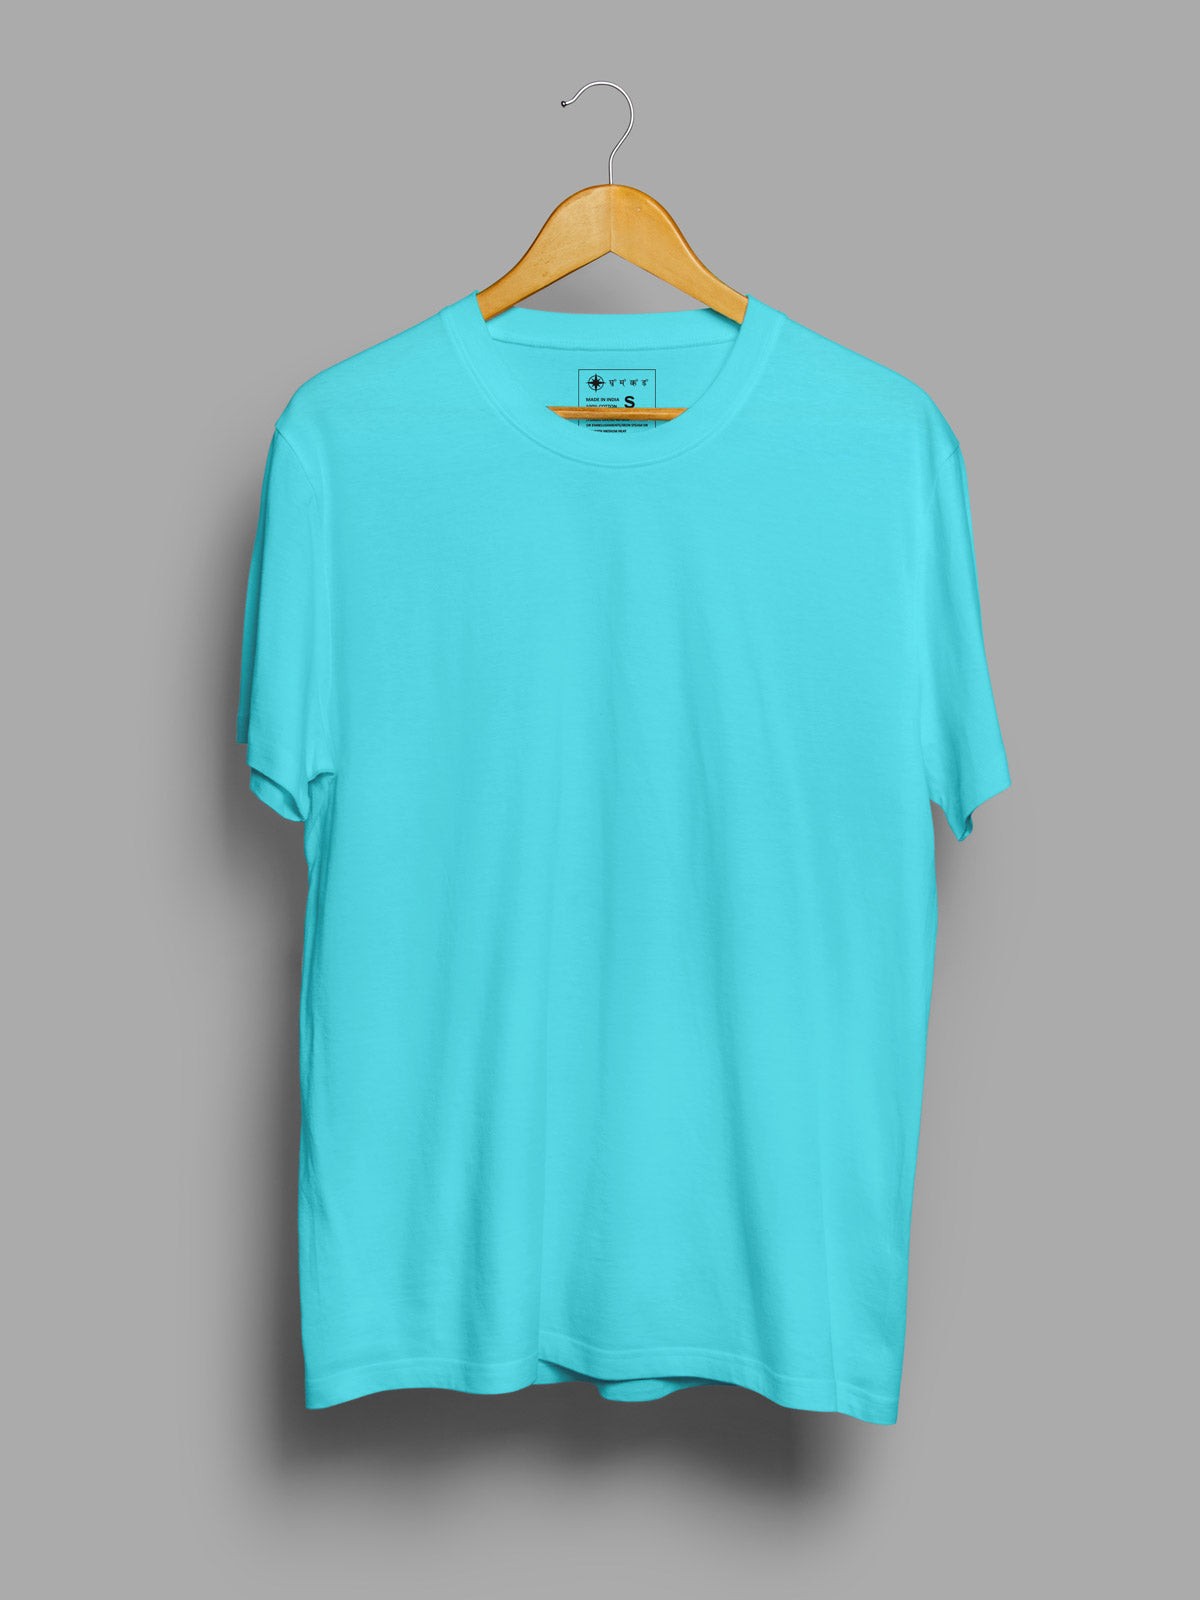 Celeste-blue-t-shirt-for-men by Ghumakkad